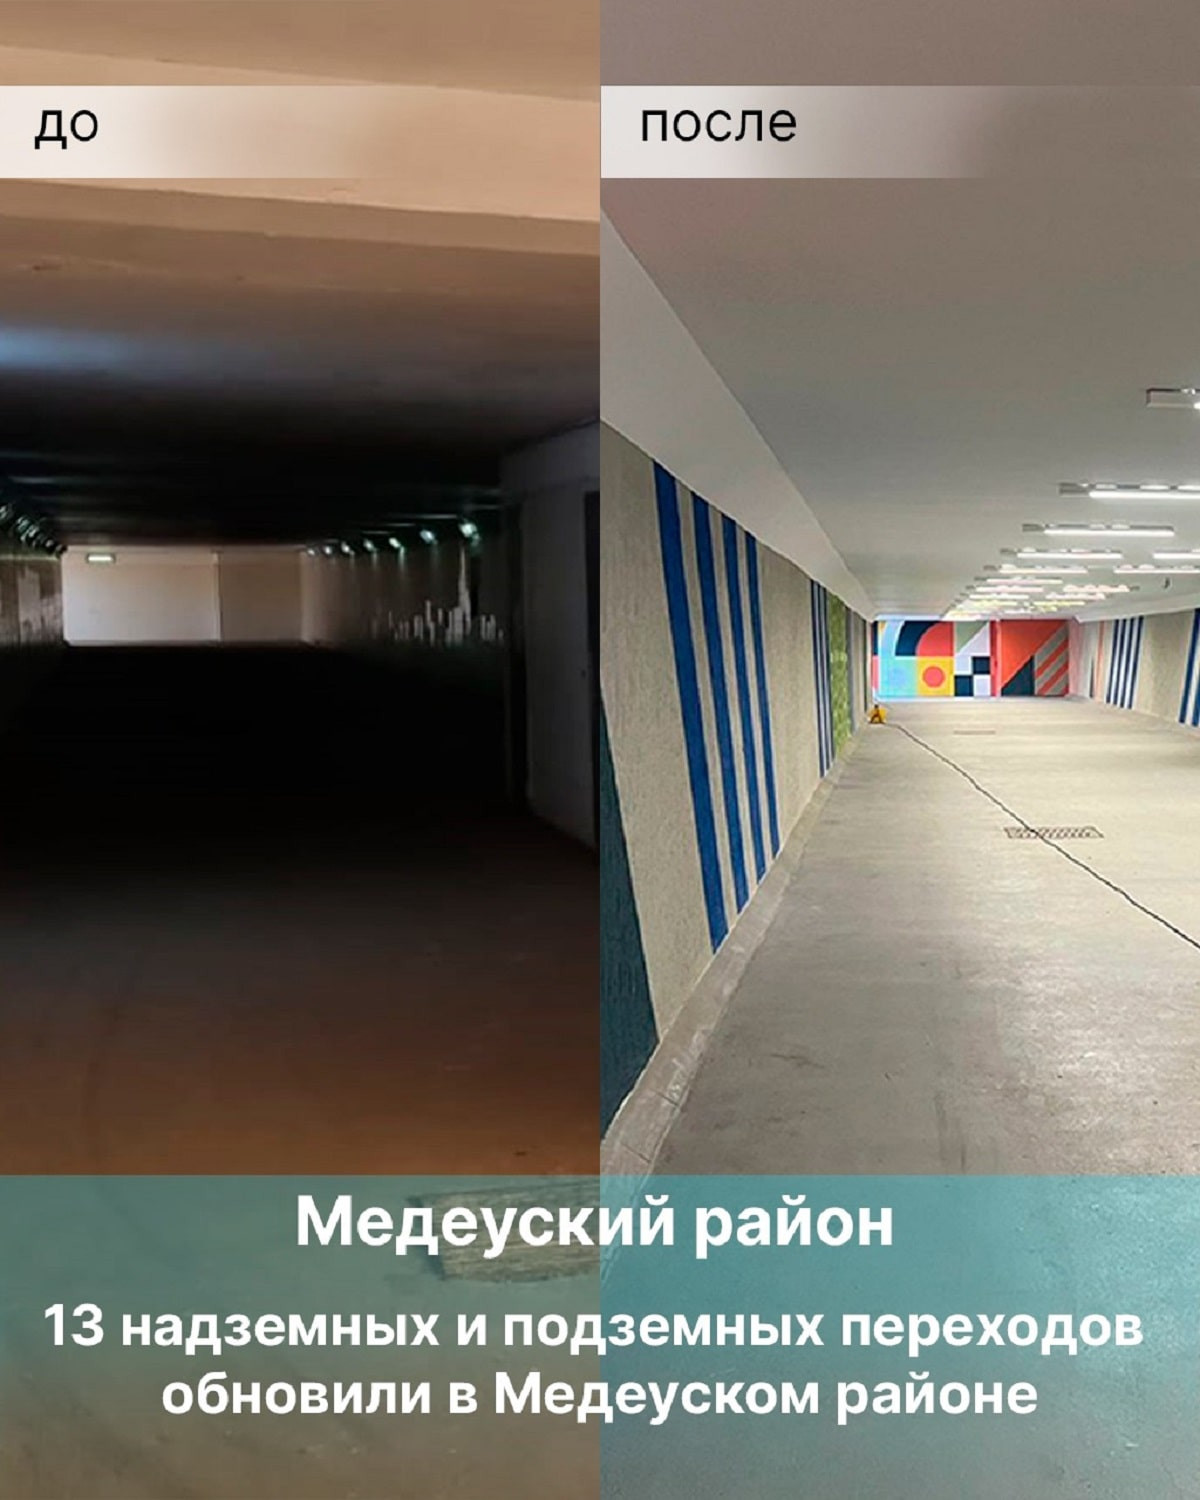 В Алматы 13 надземных и подземных переходов обновили в Медеуском районе